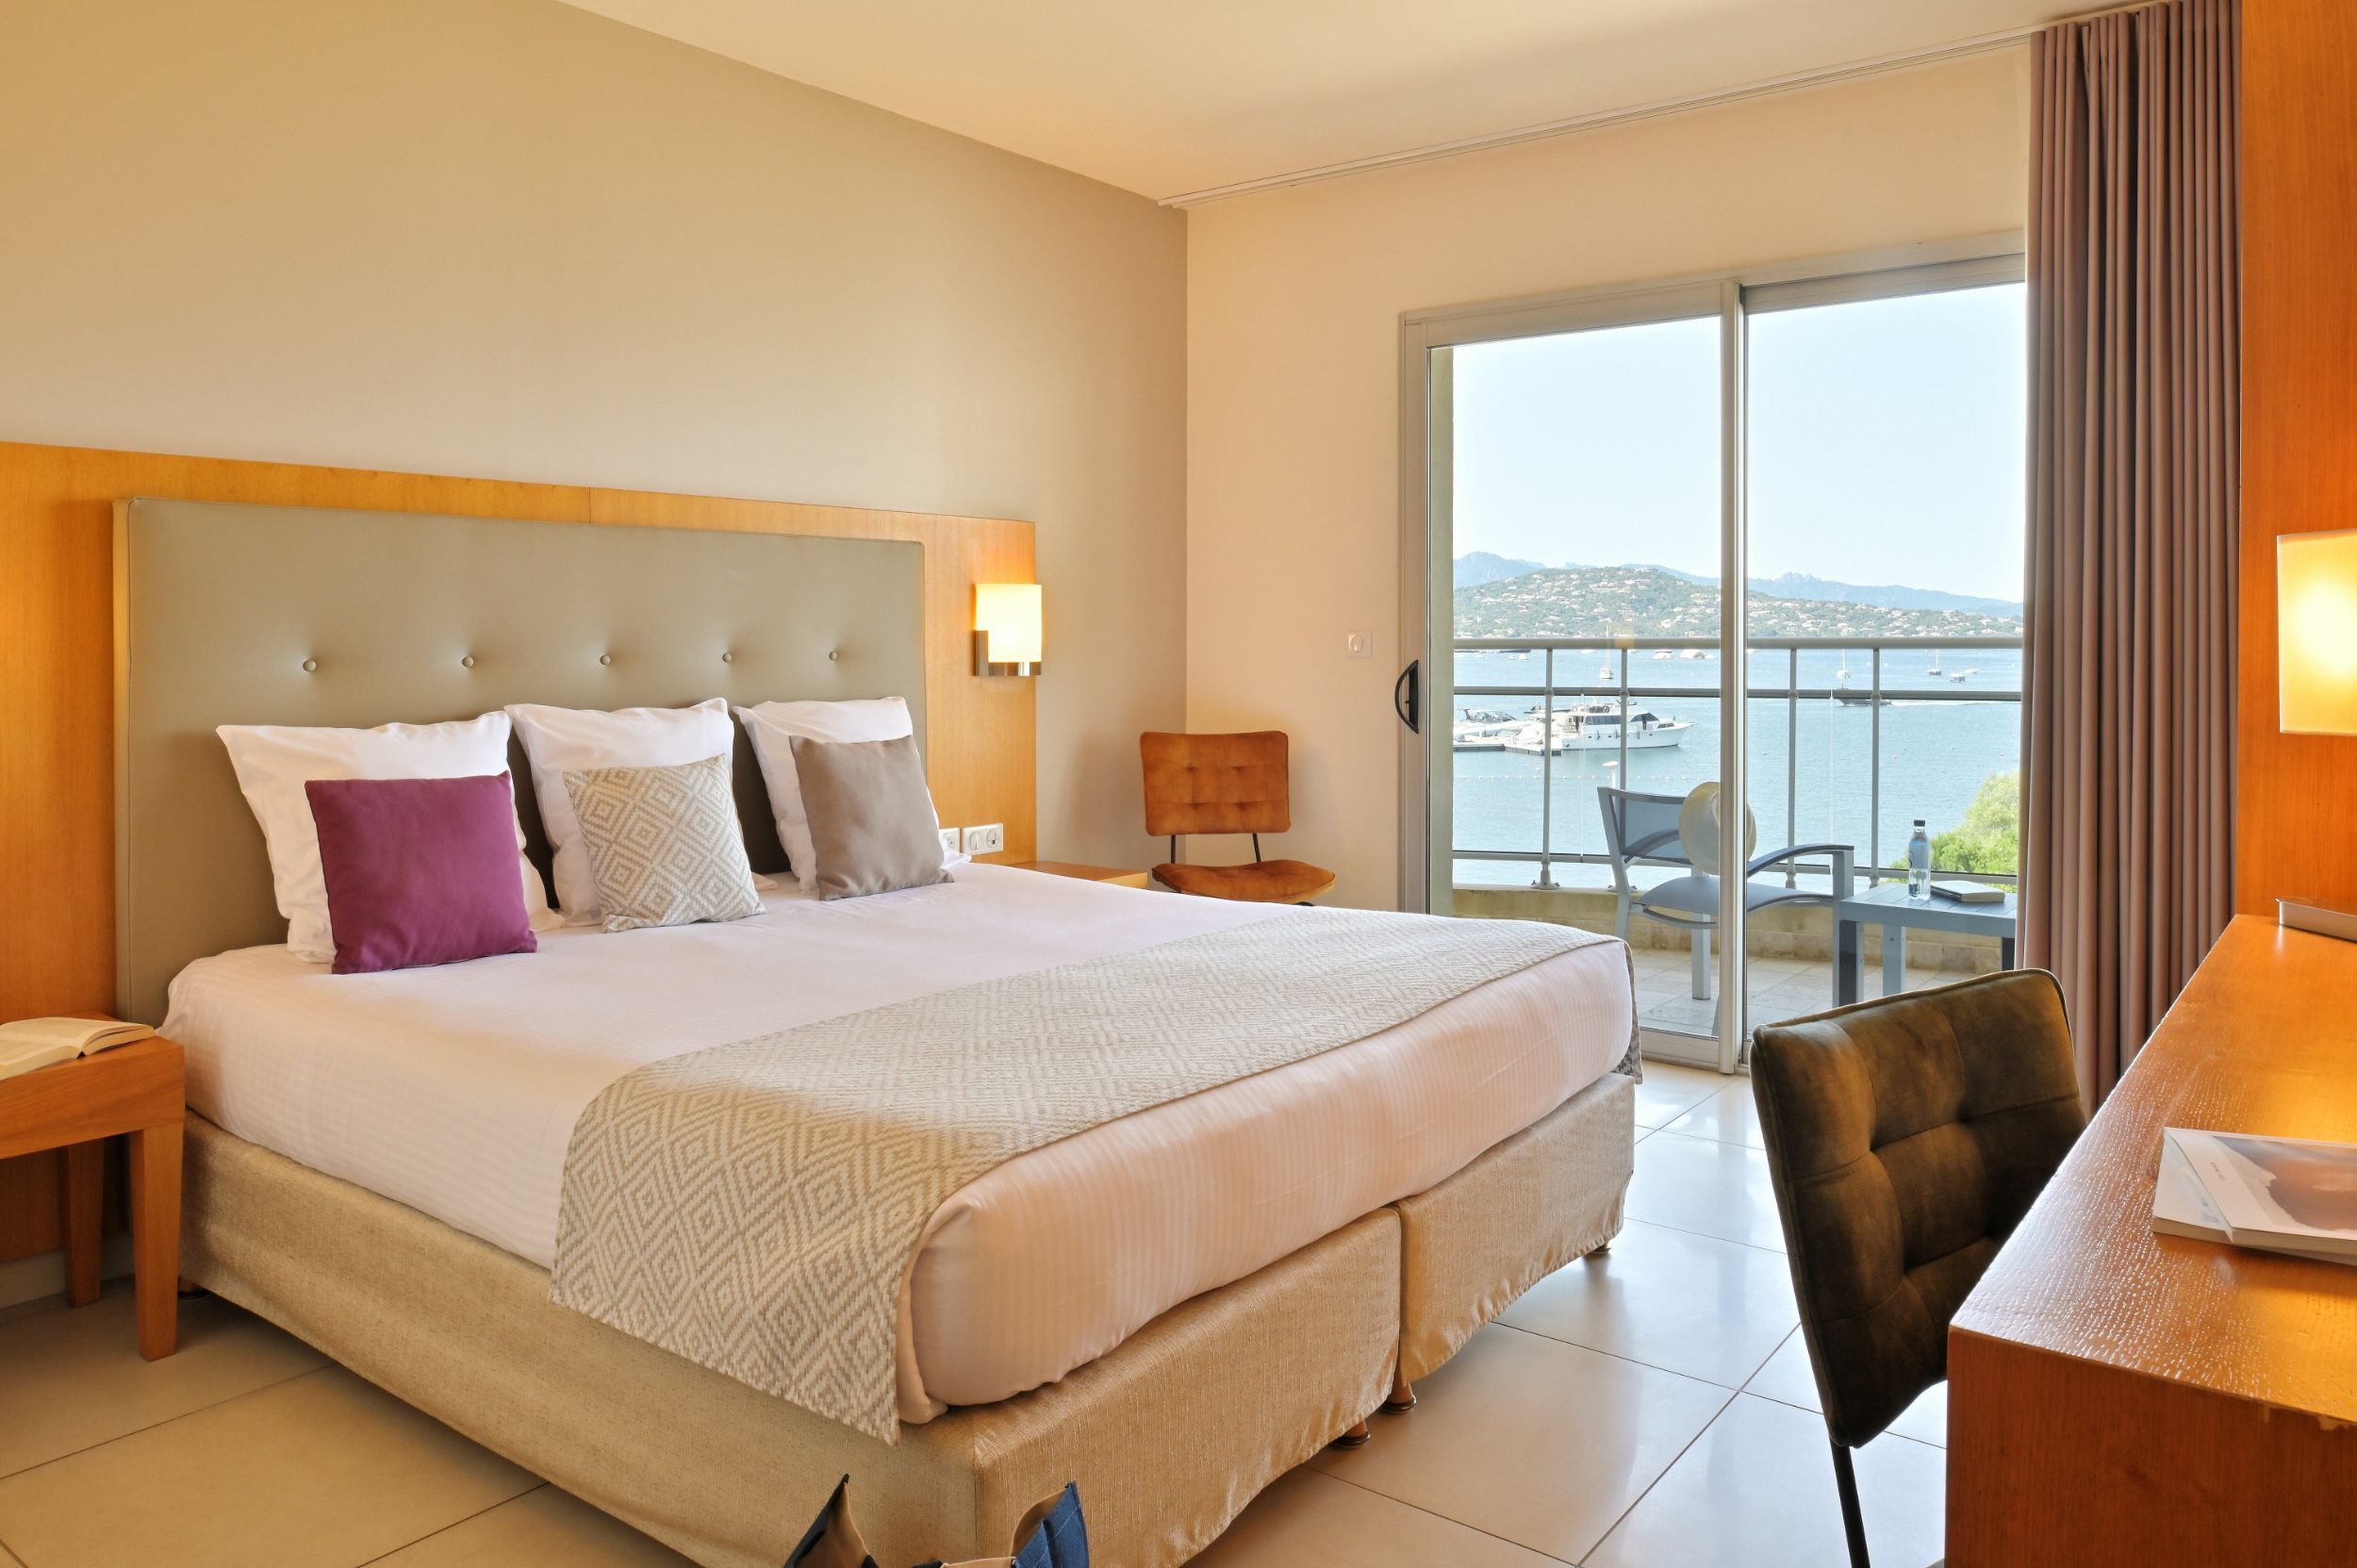 Une chambre d'hôtel avec vue mer à Porto-Vecchio | Hôtel Costa Salina